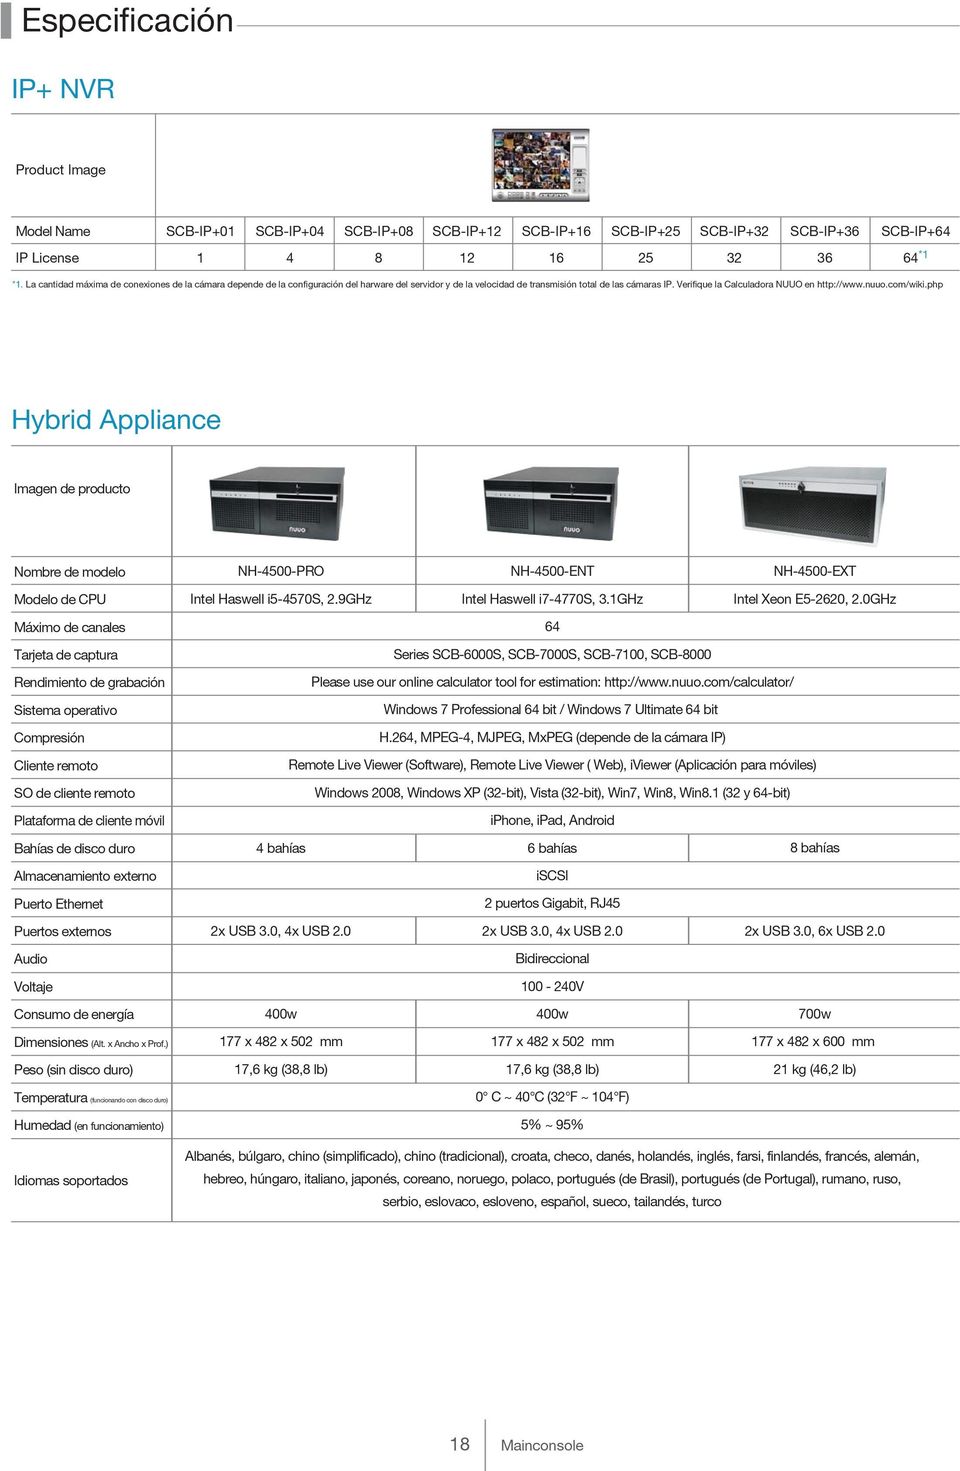 nuuo.com/wiki.php Hybrid Appliance Imagen de producto Nombre de modelo NH-4500-PRO NH-4500-ENT NH-4500-EXT Modelo de CPU Intel Haswell i5-4570s, 2.9GHz Intel Haswell i7-4770s, 3.